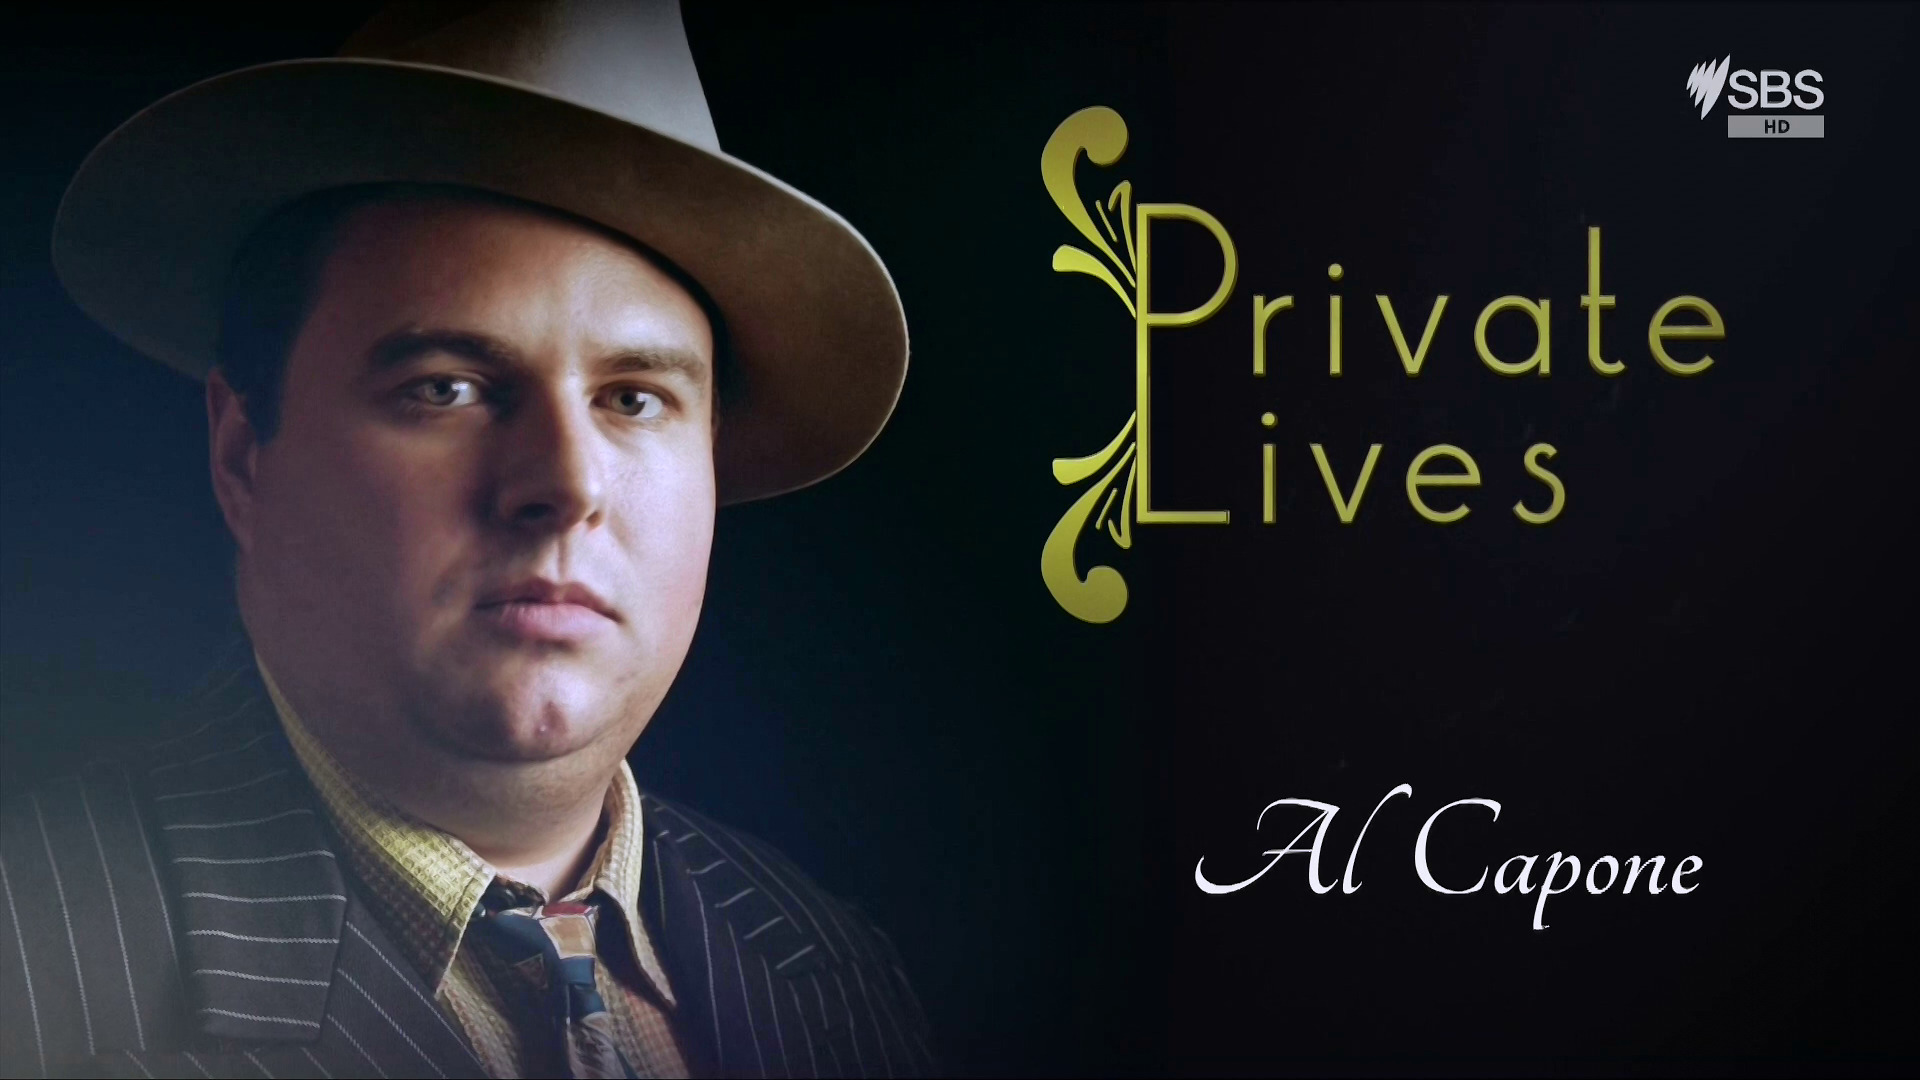 Private Lives 2019 S01E06 Al Capone 1080p